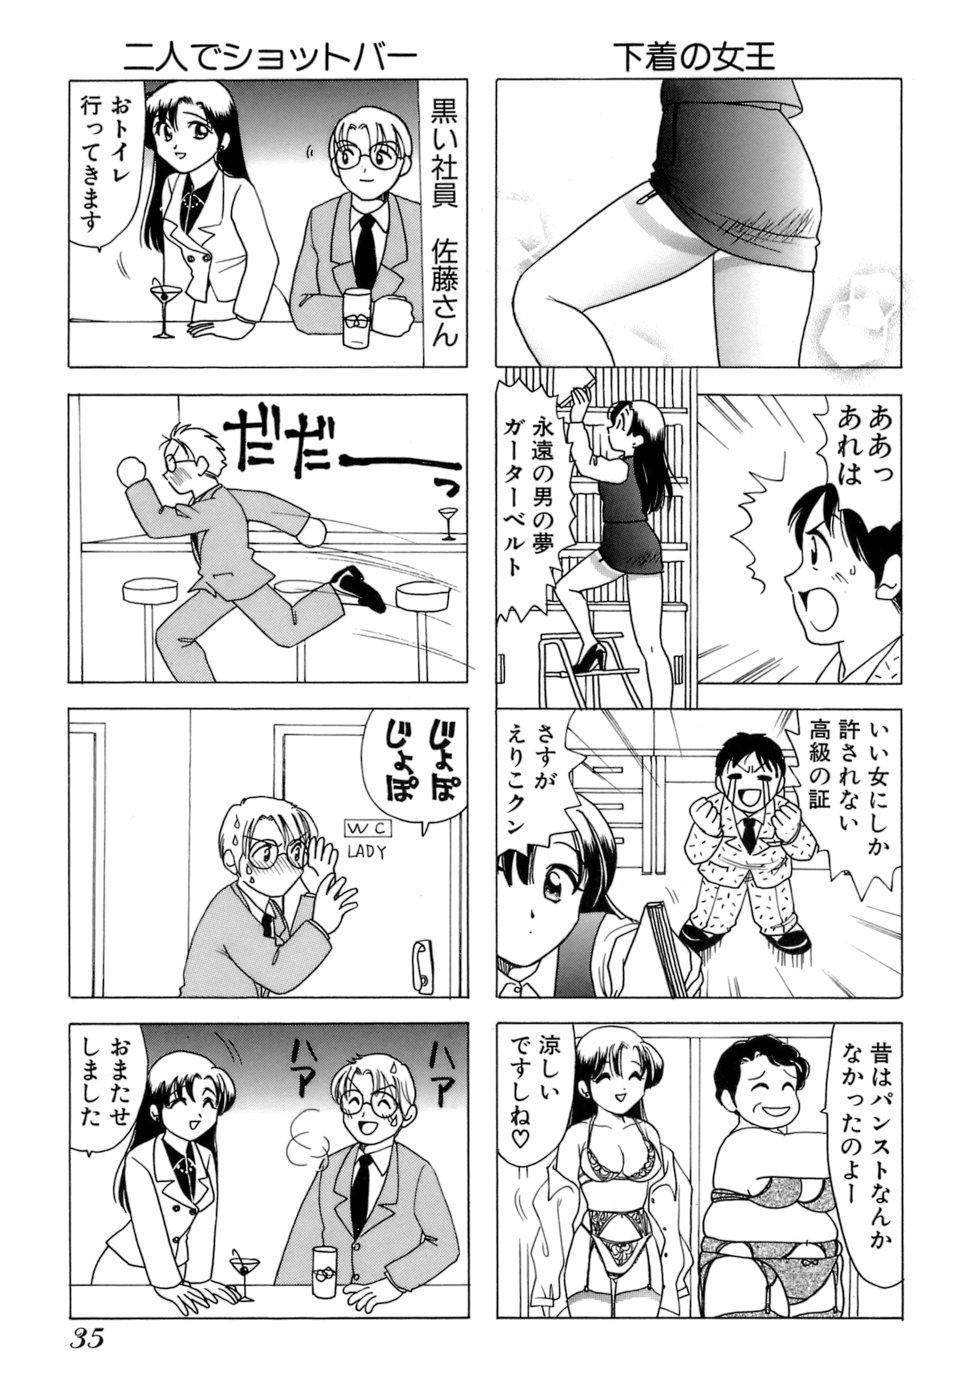 Eriko-kun, Ocha!! Vol.01 37